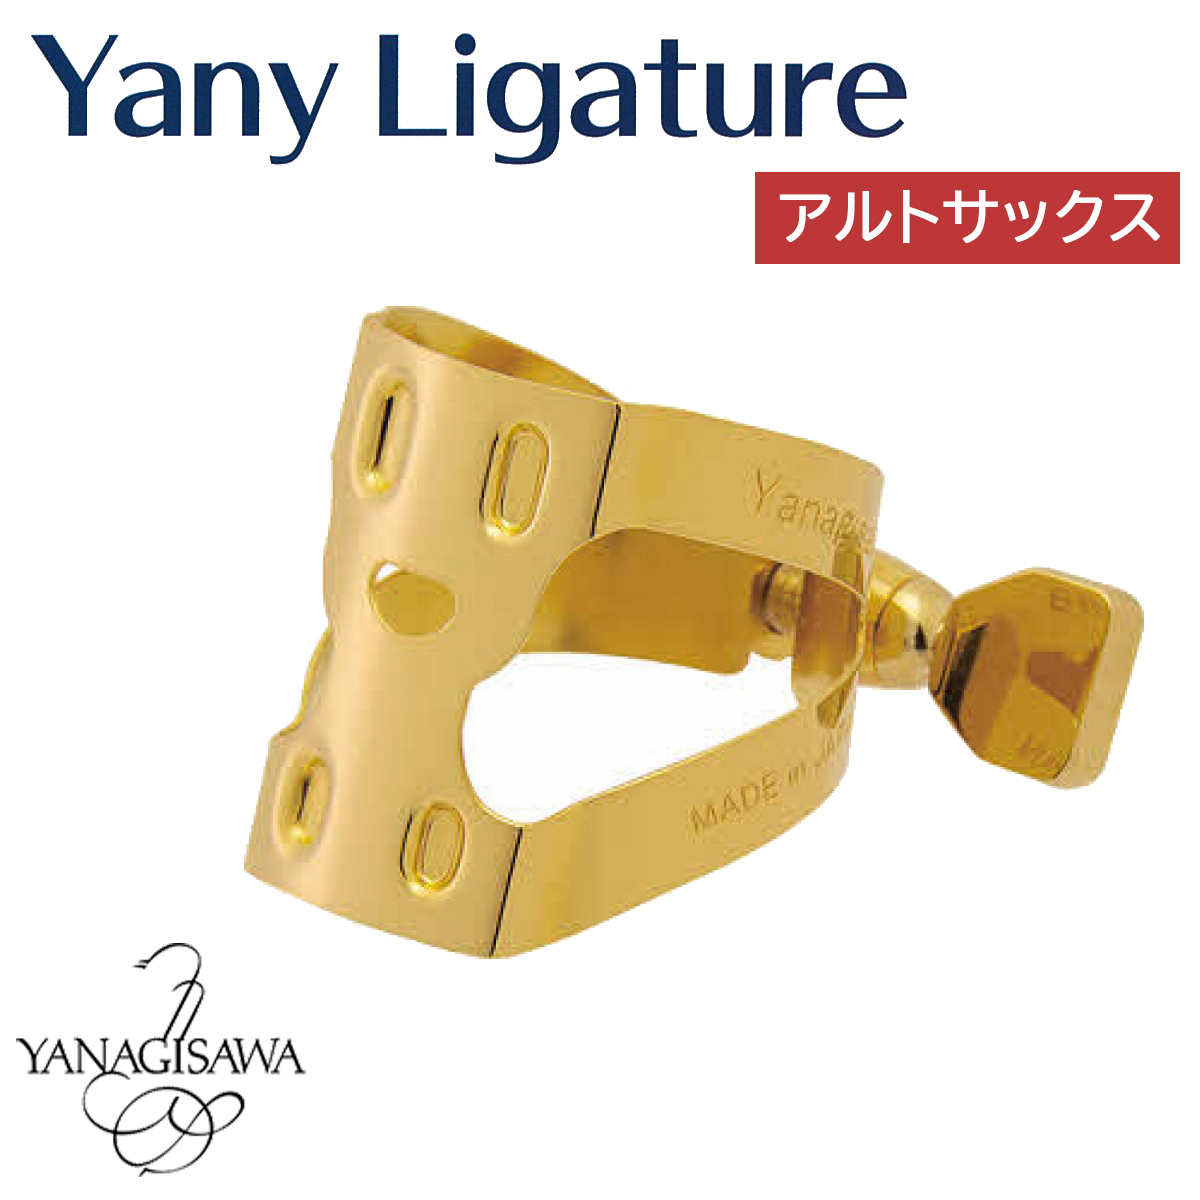 YANAGISAWA Yany Ligature アルトサックス用 ヤニー・ニコちゃん 【 ヤナギサワ ヤニー・リガチャー 】